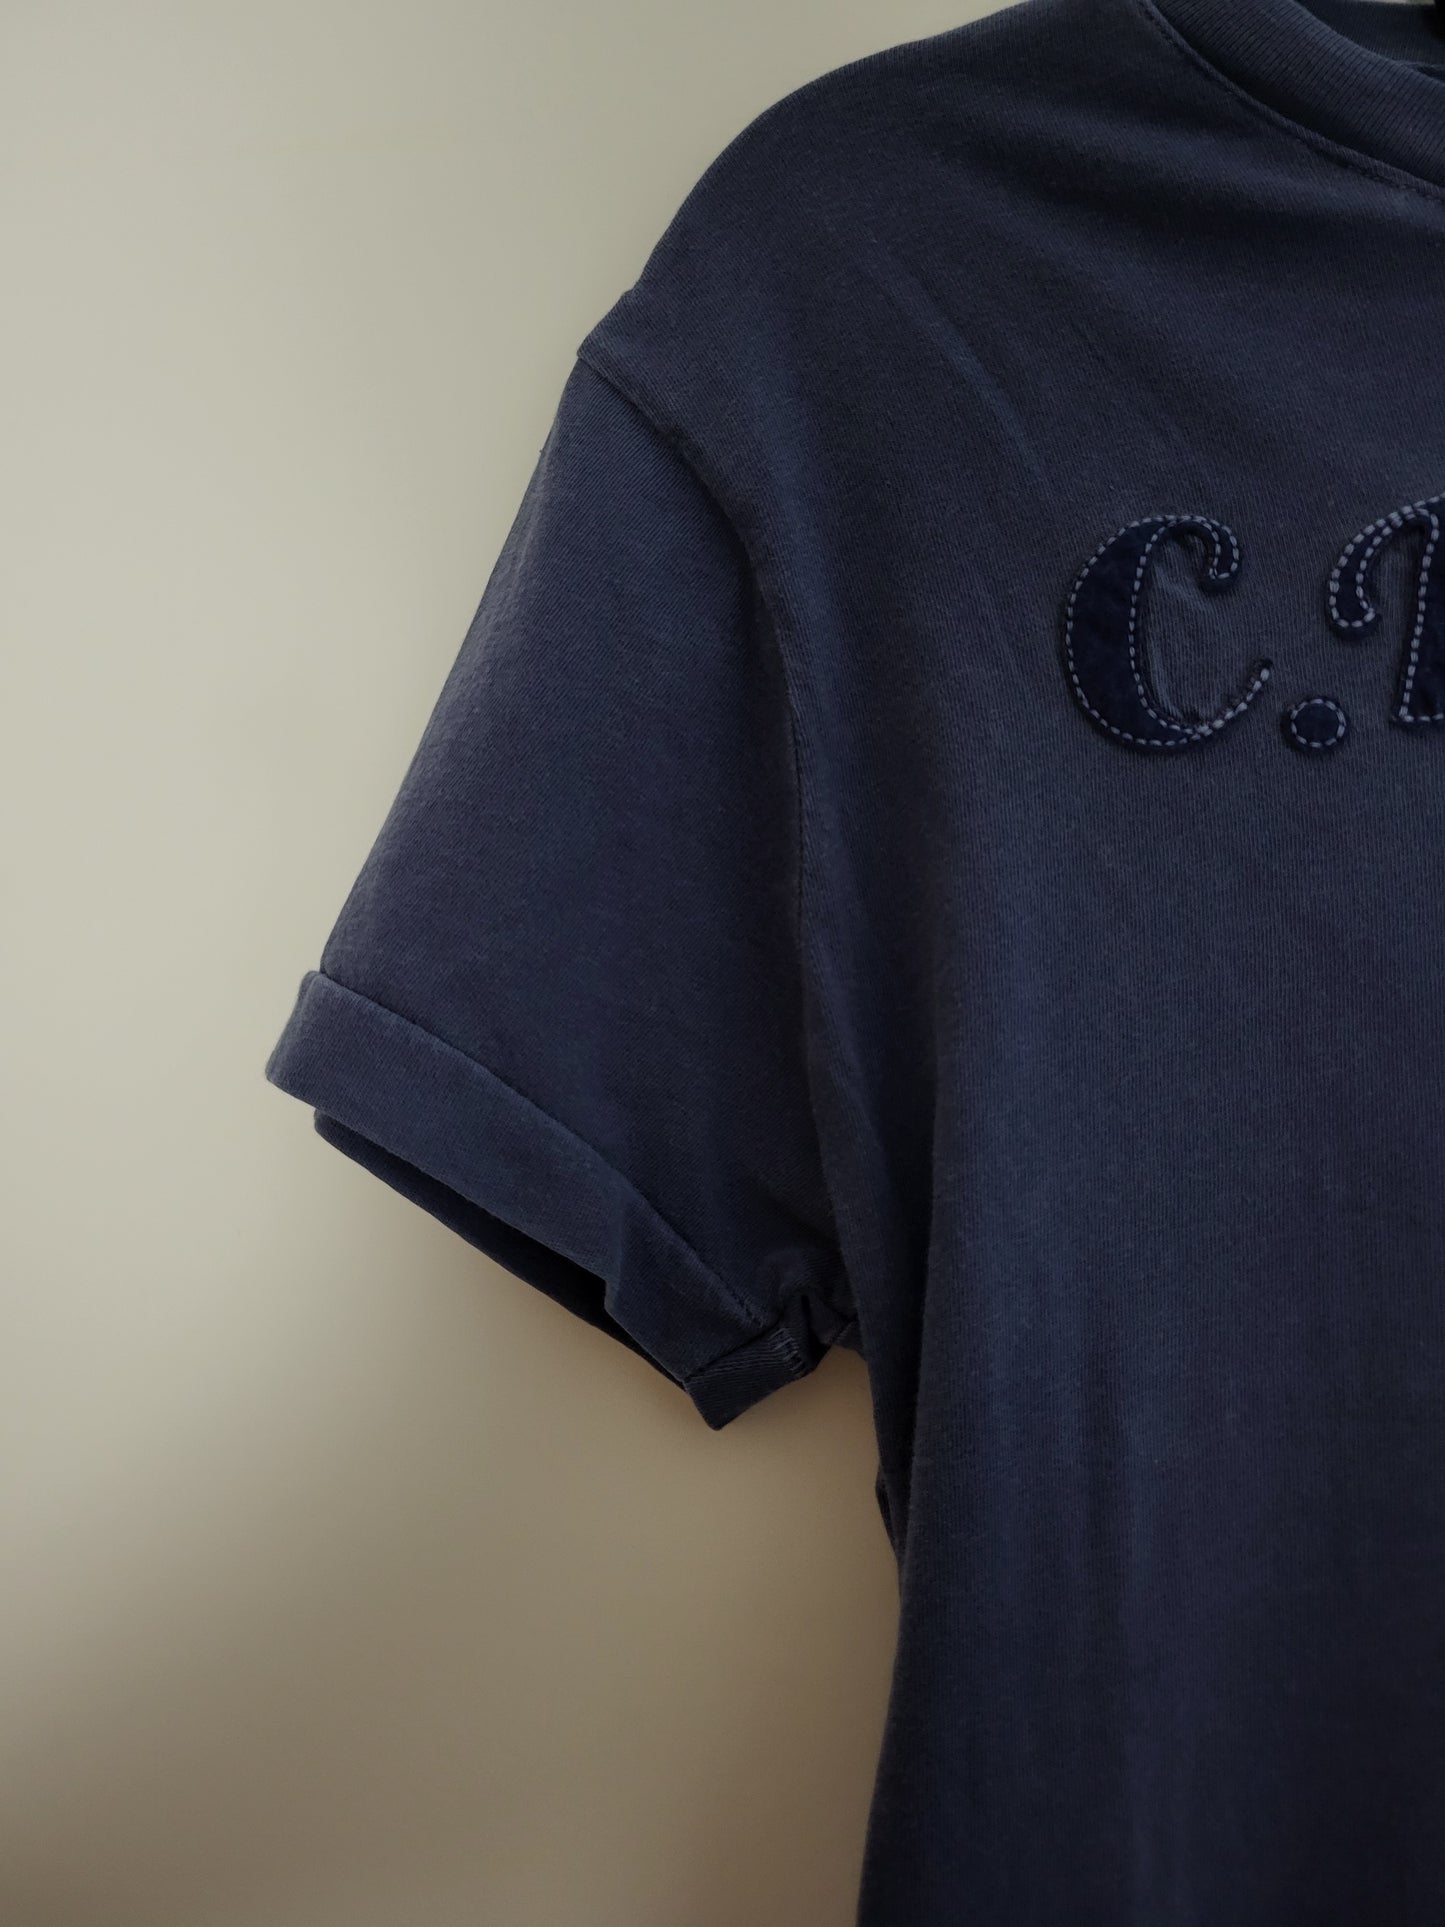 C.P. COMPANY - T-Shirt - Klassisch - Blaugrau - Herren - S